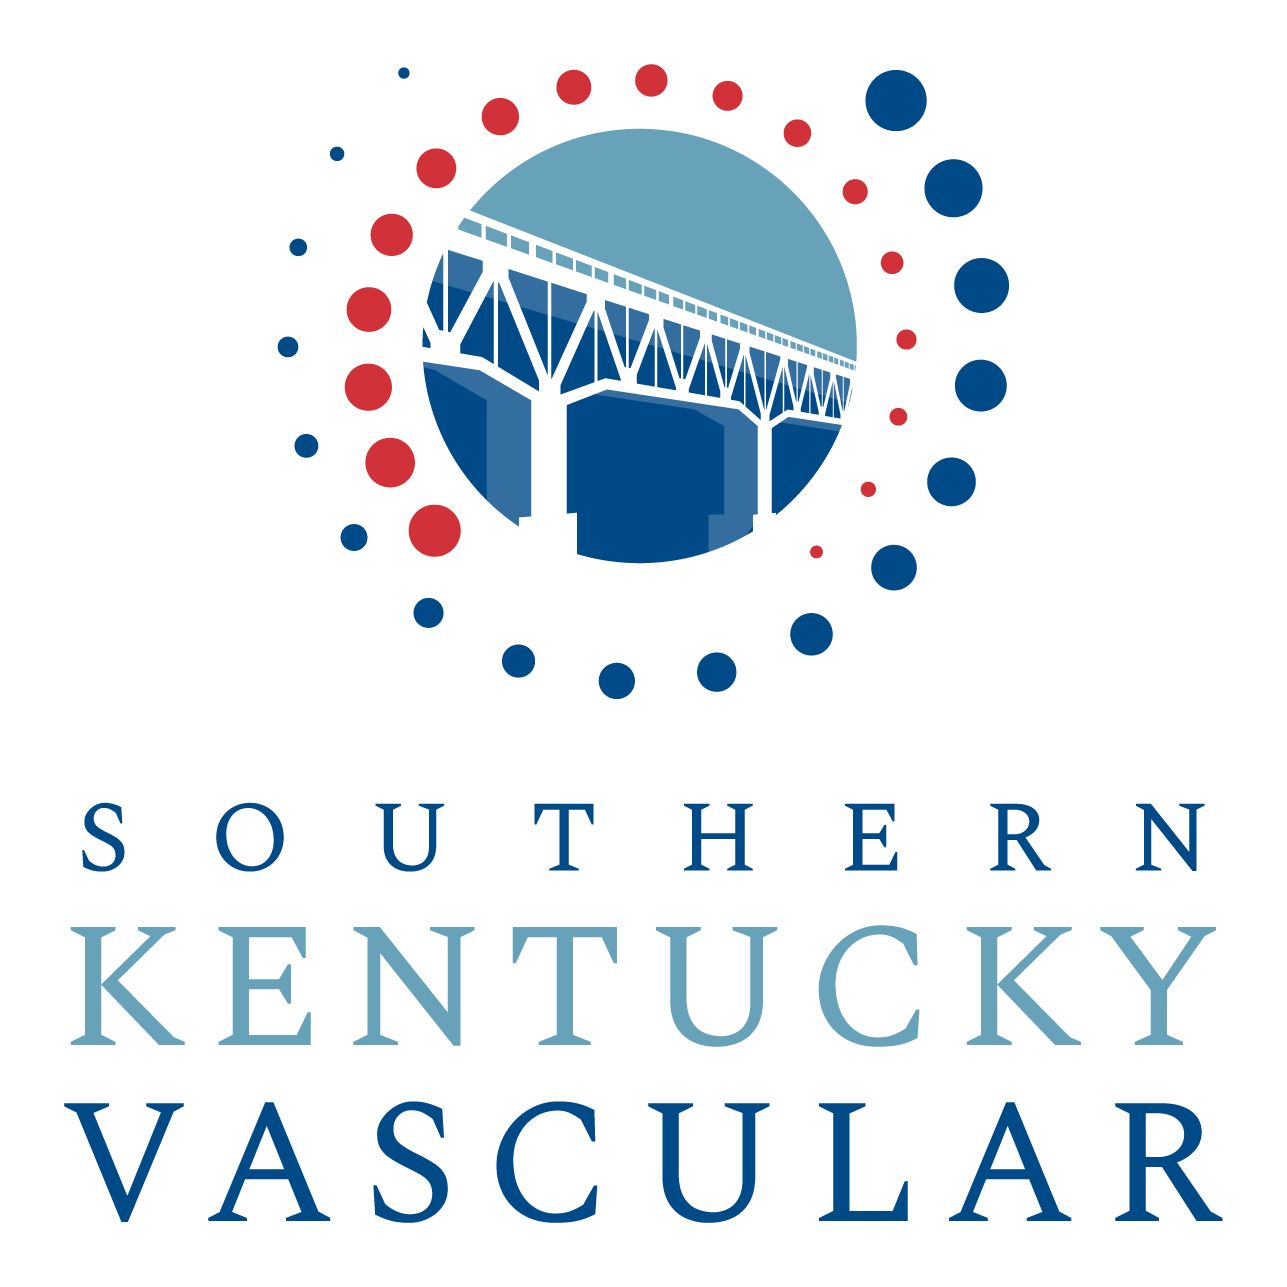 Southern Kentucky Vascular